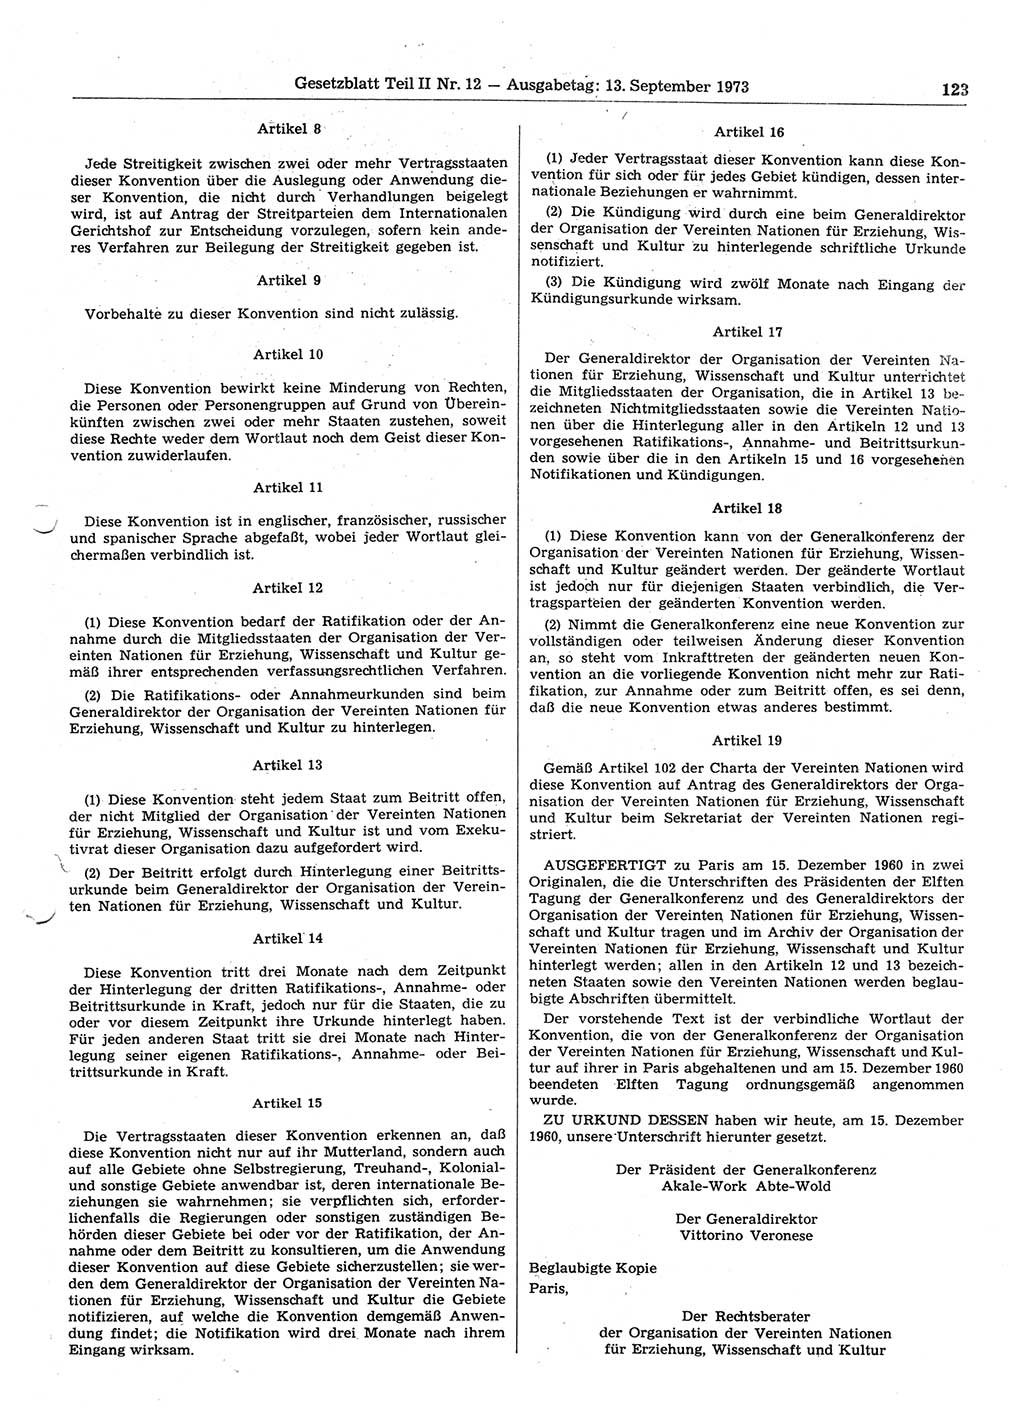 Gesetzblatt (GBl.) der Deutschen Demokratischen Republik (DDR) Teil ⅠⅠ 1973, Seite 123 (GBl. DDR ⅠⅠ 1973, S. 123)